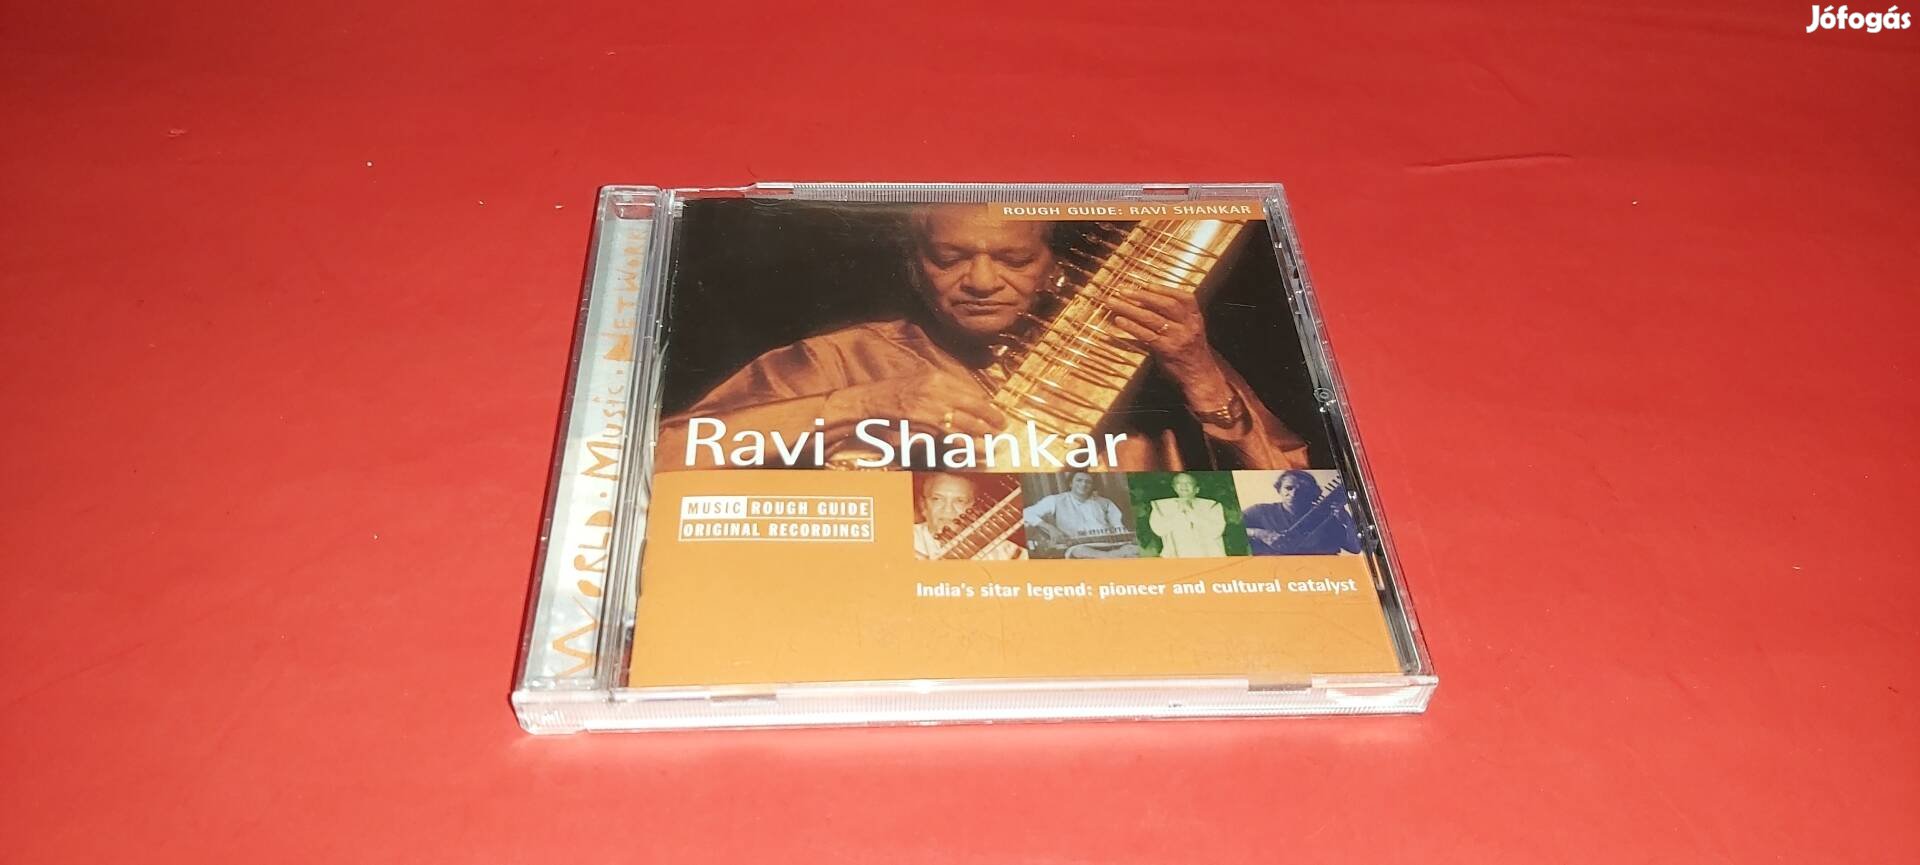 Ravi Shankar Rough guide Cd 2004 U.K.